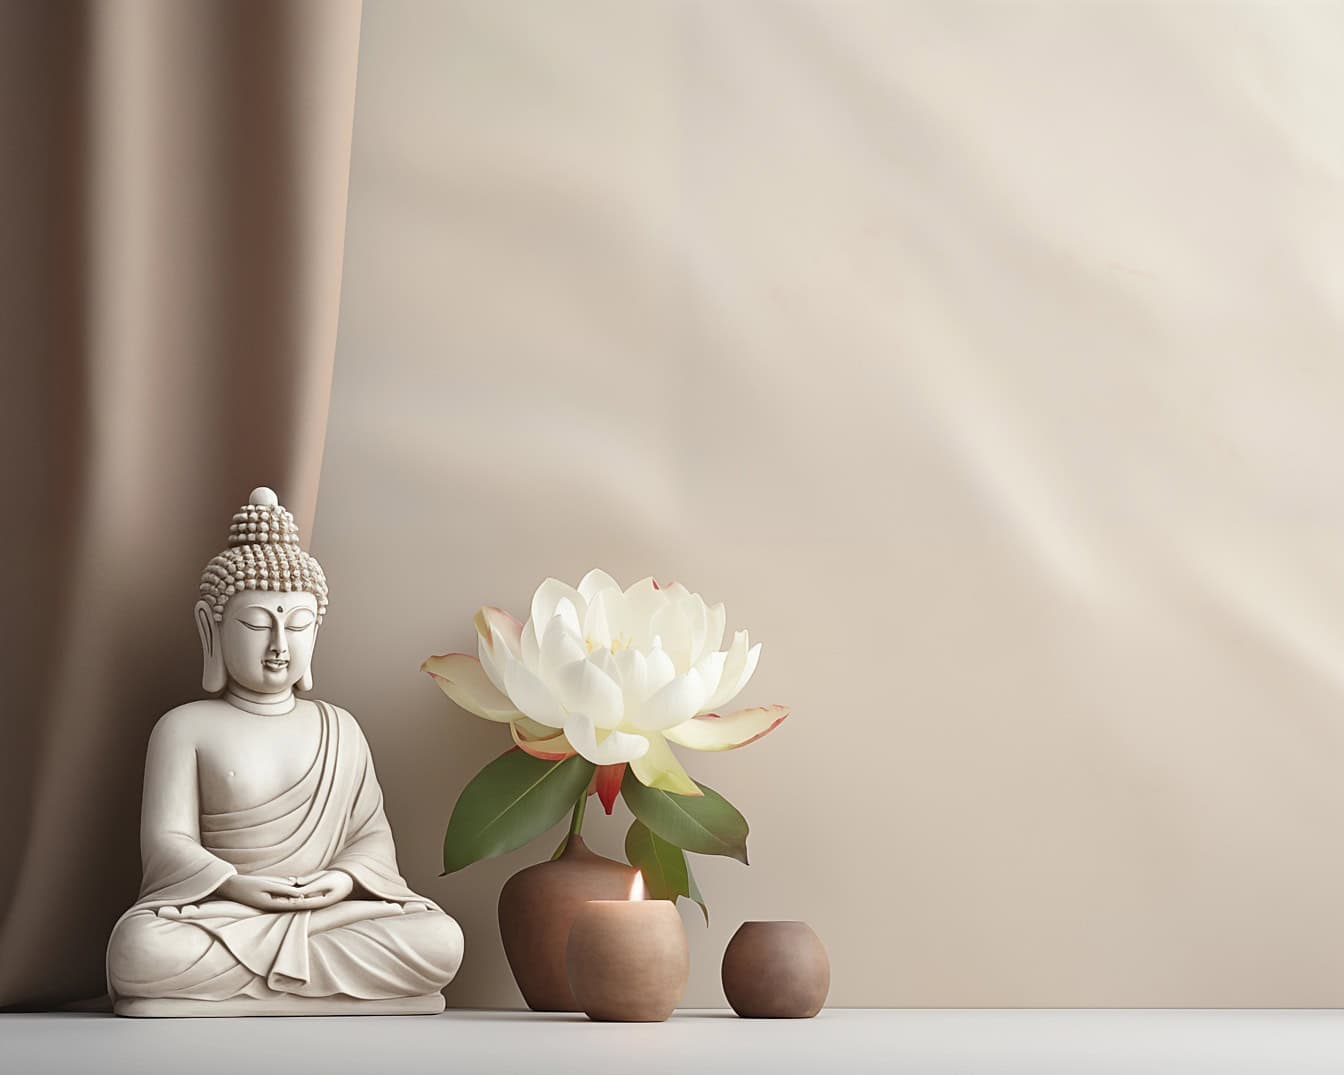 En hvid buddha statue sidder ved siden af en hvid lotusblomst, en illustration, der skildrer Zen meditation